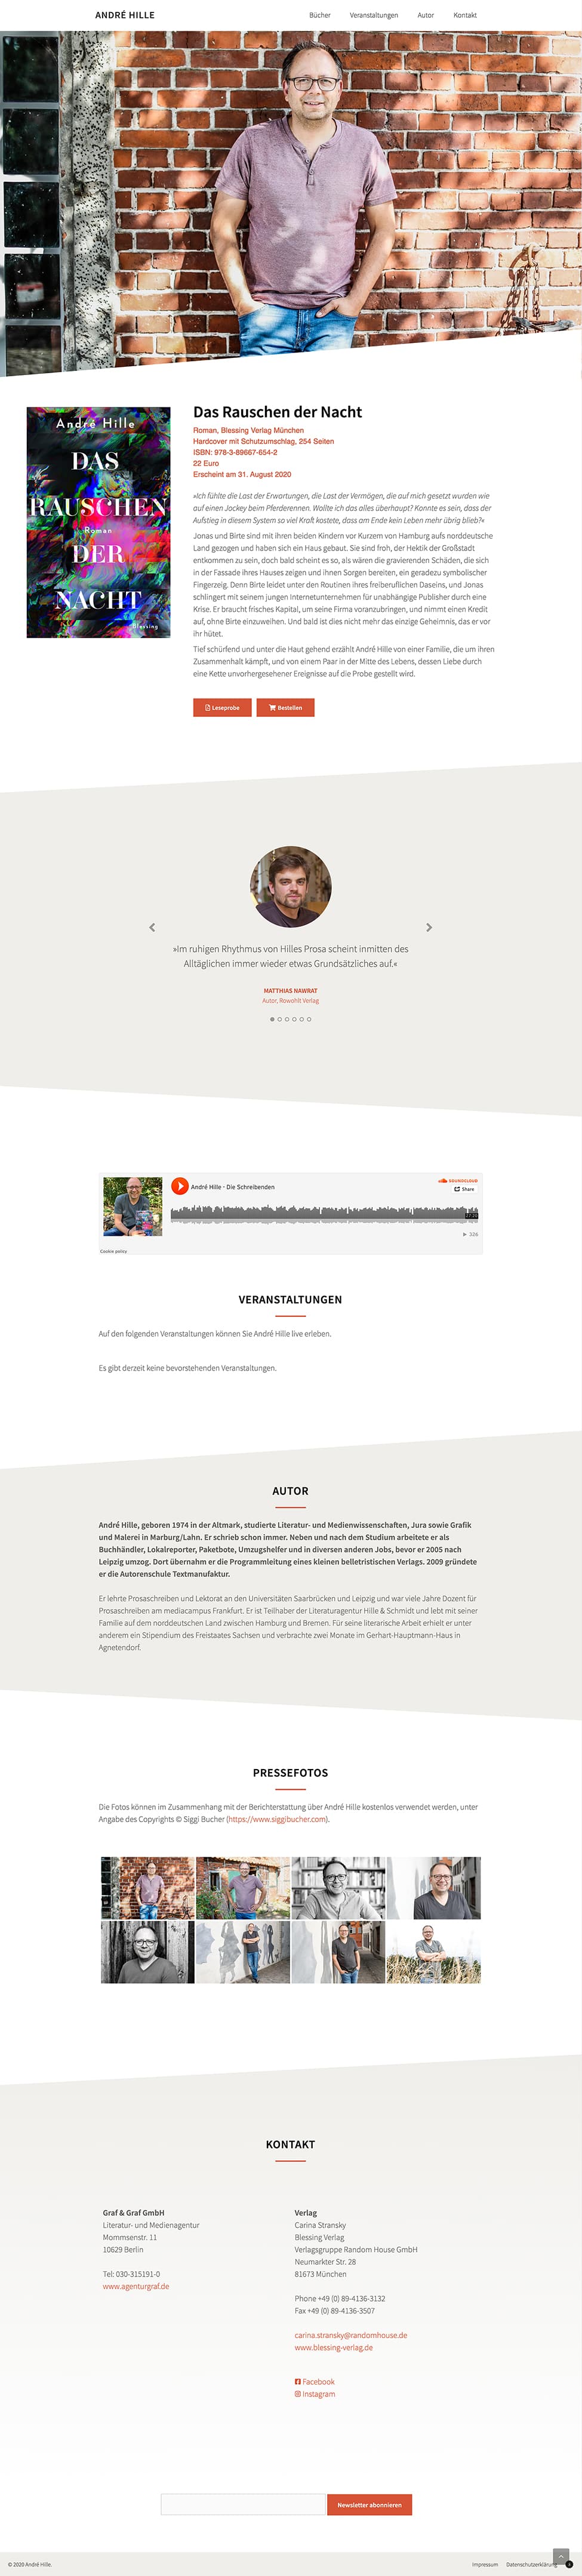 Responsive Webdesign für André Hille